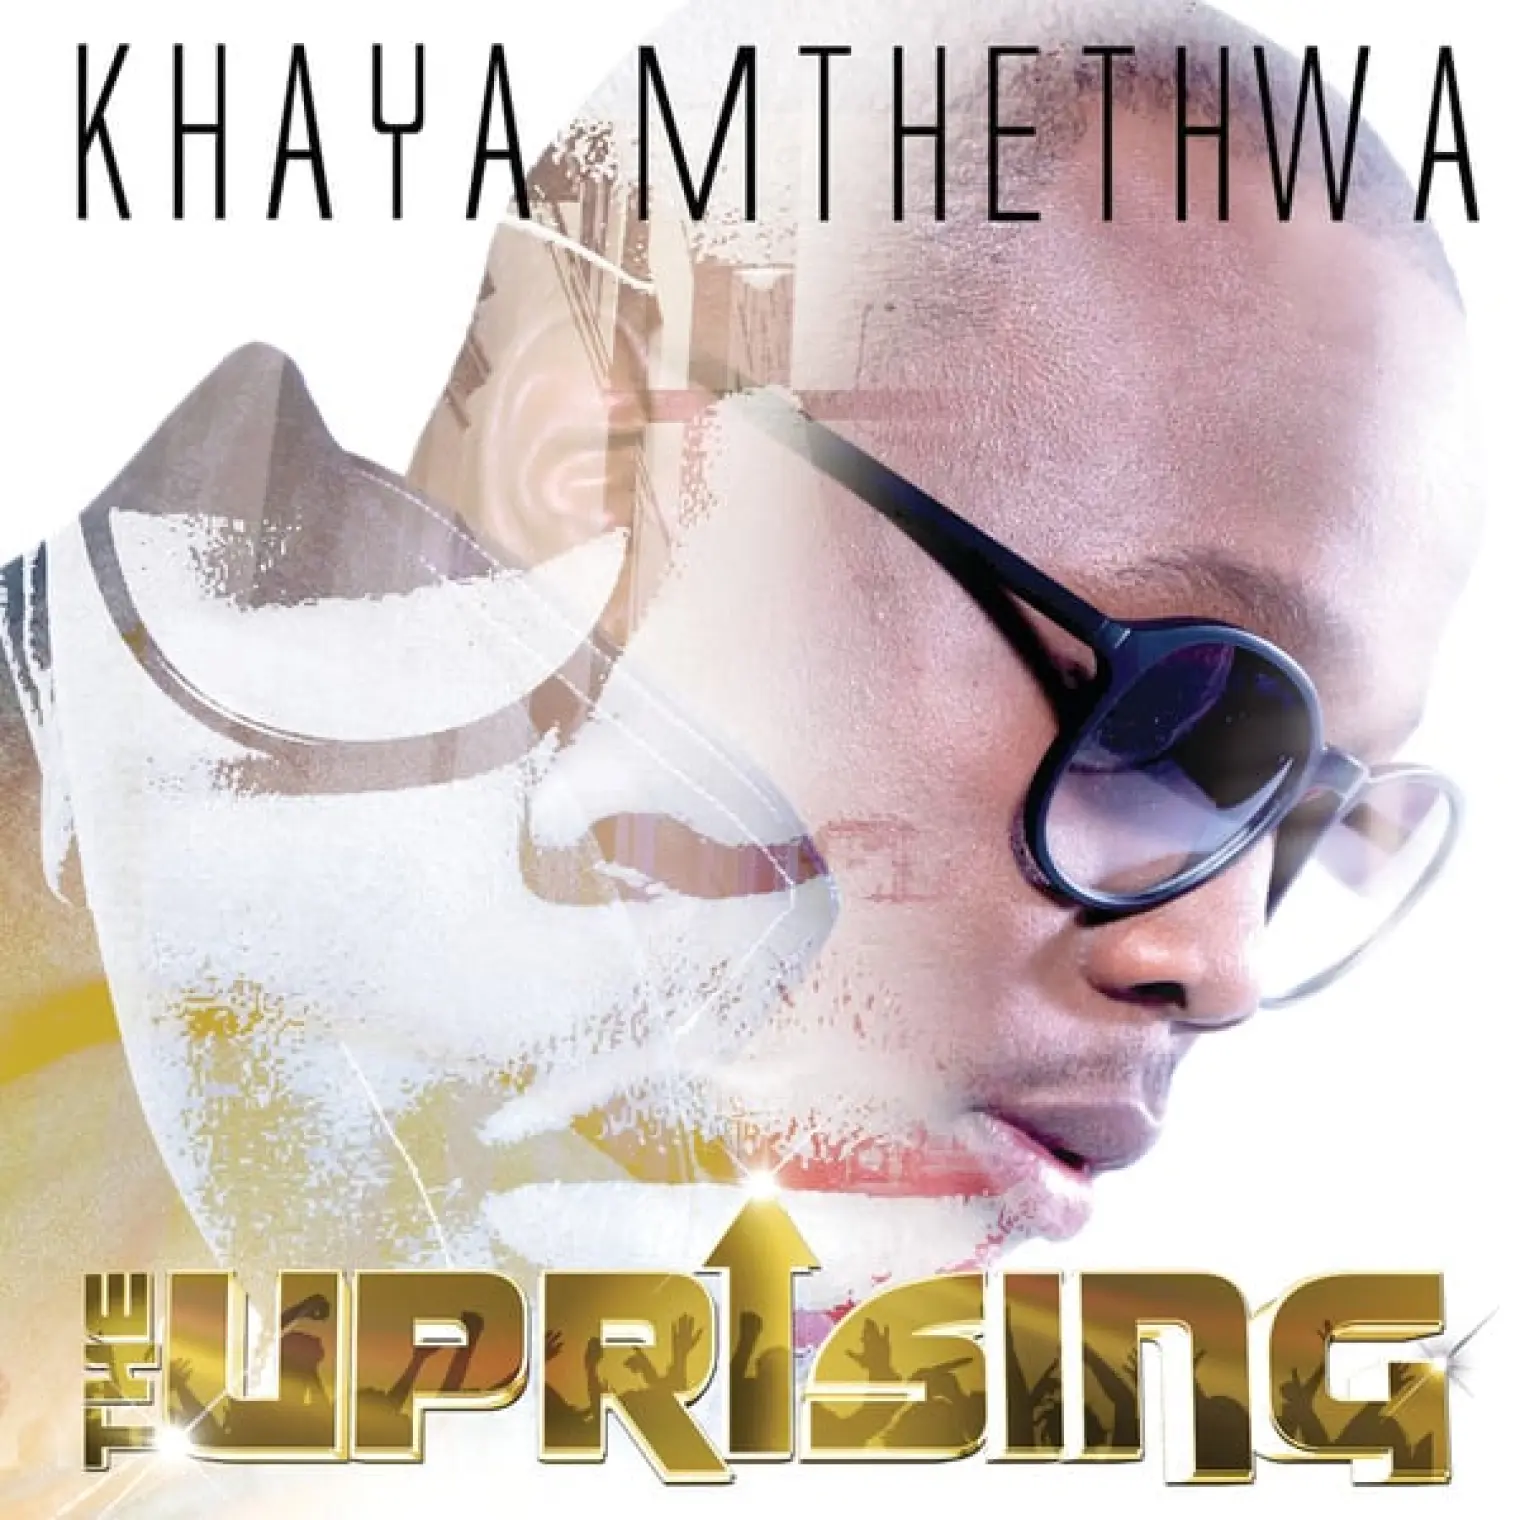 The Uprising -  Khaya Mthethwa 